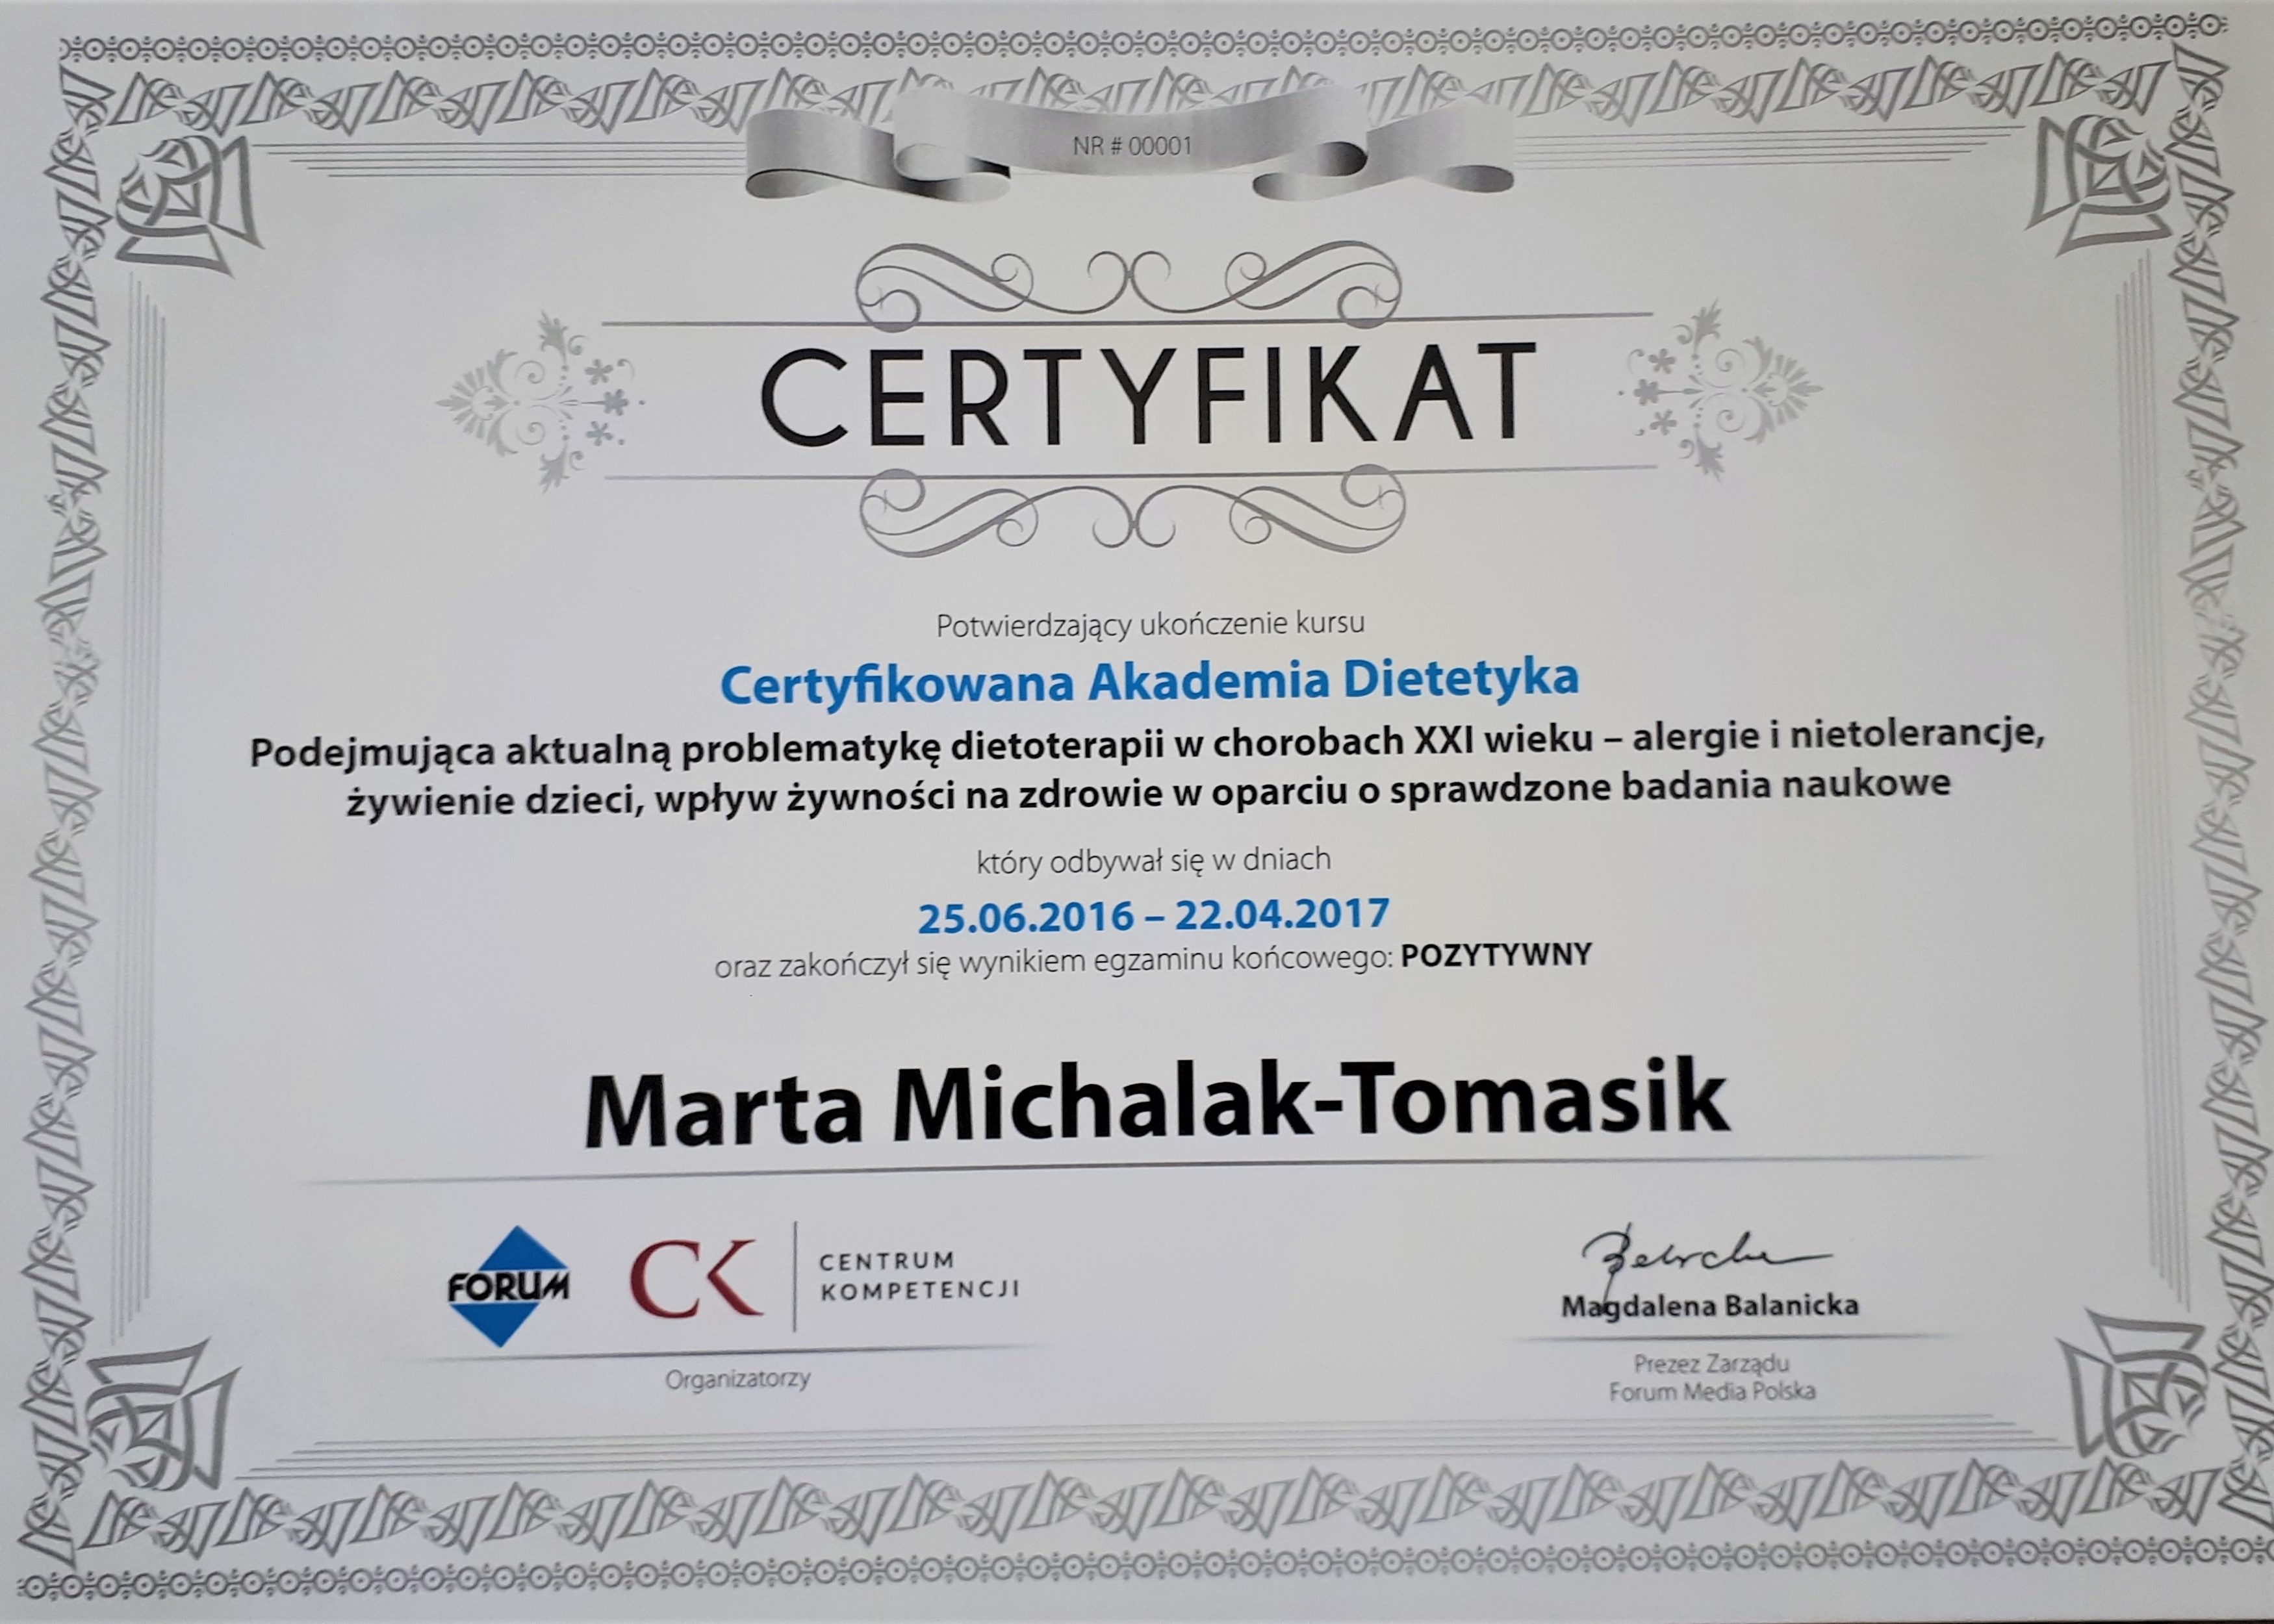 http://udietetyczek.pl/wp-content/uploads/2019/05/Marta-Michalak-Tomasi-dietetyk-3500x2500.jpg